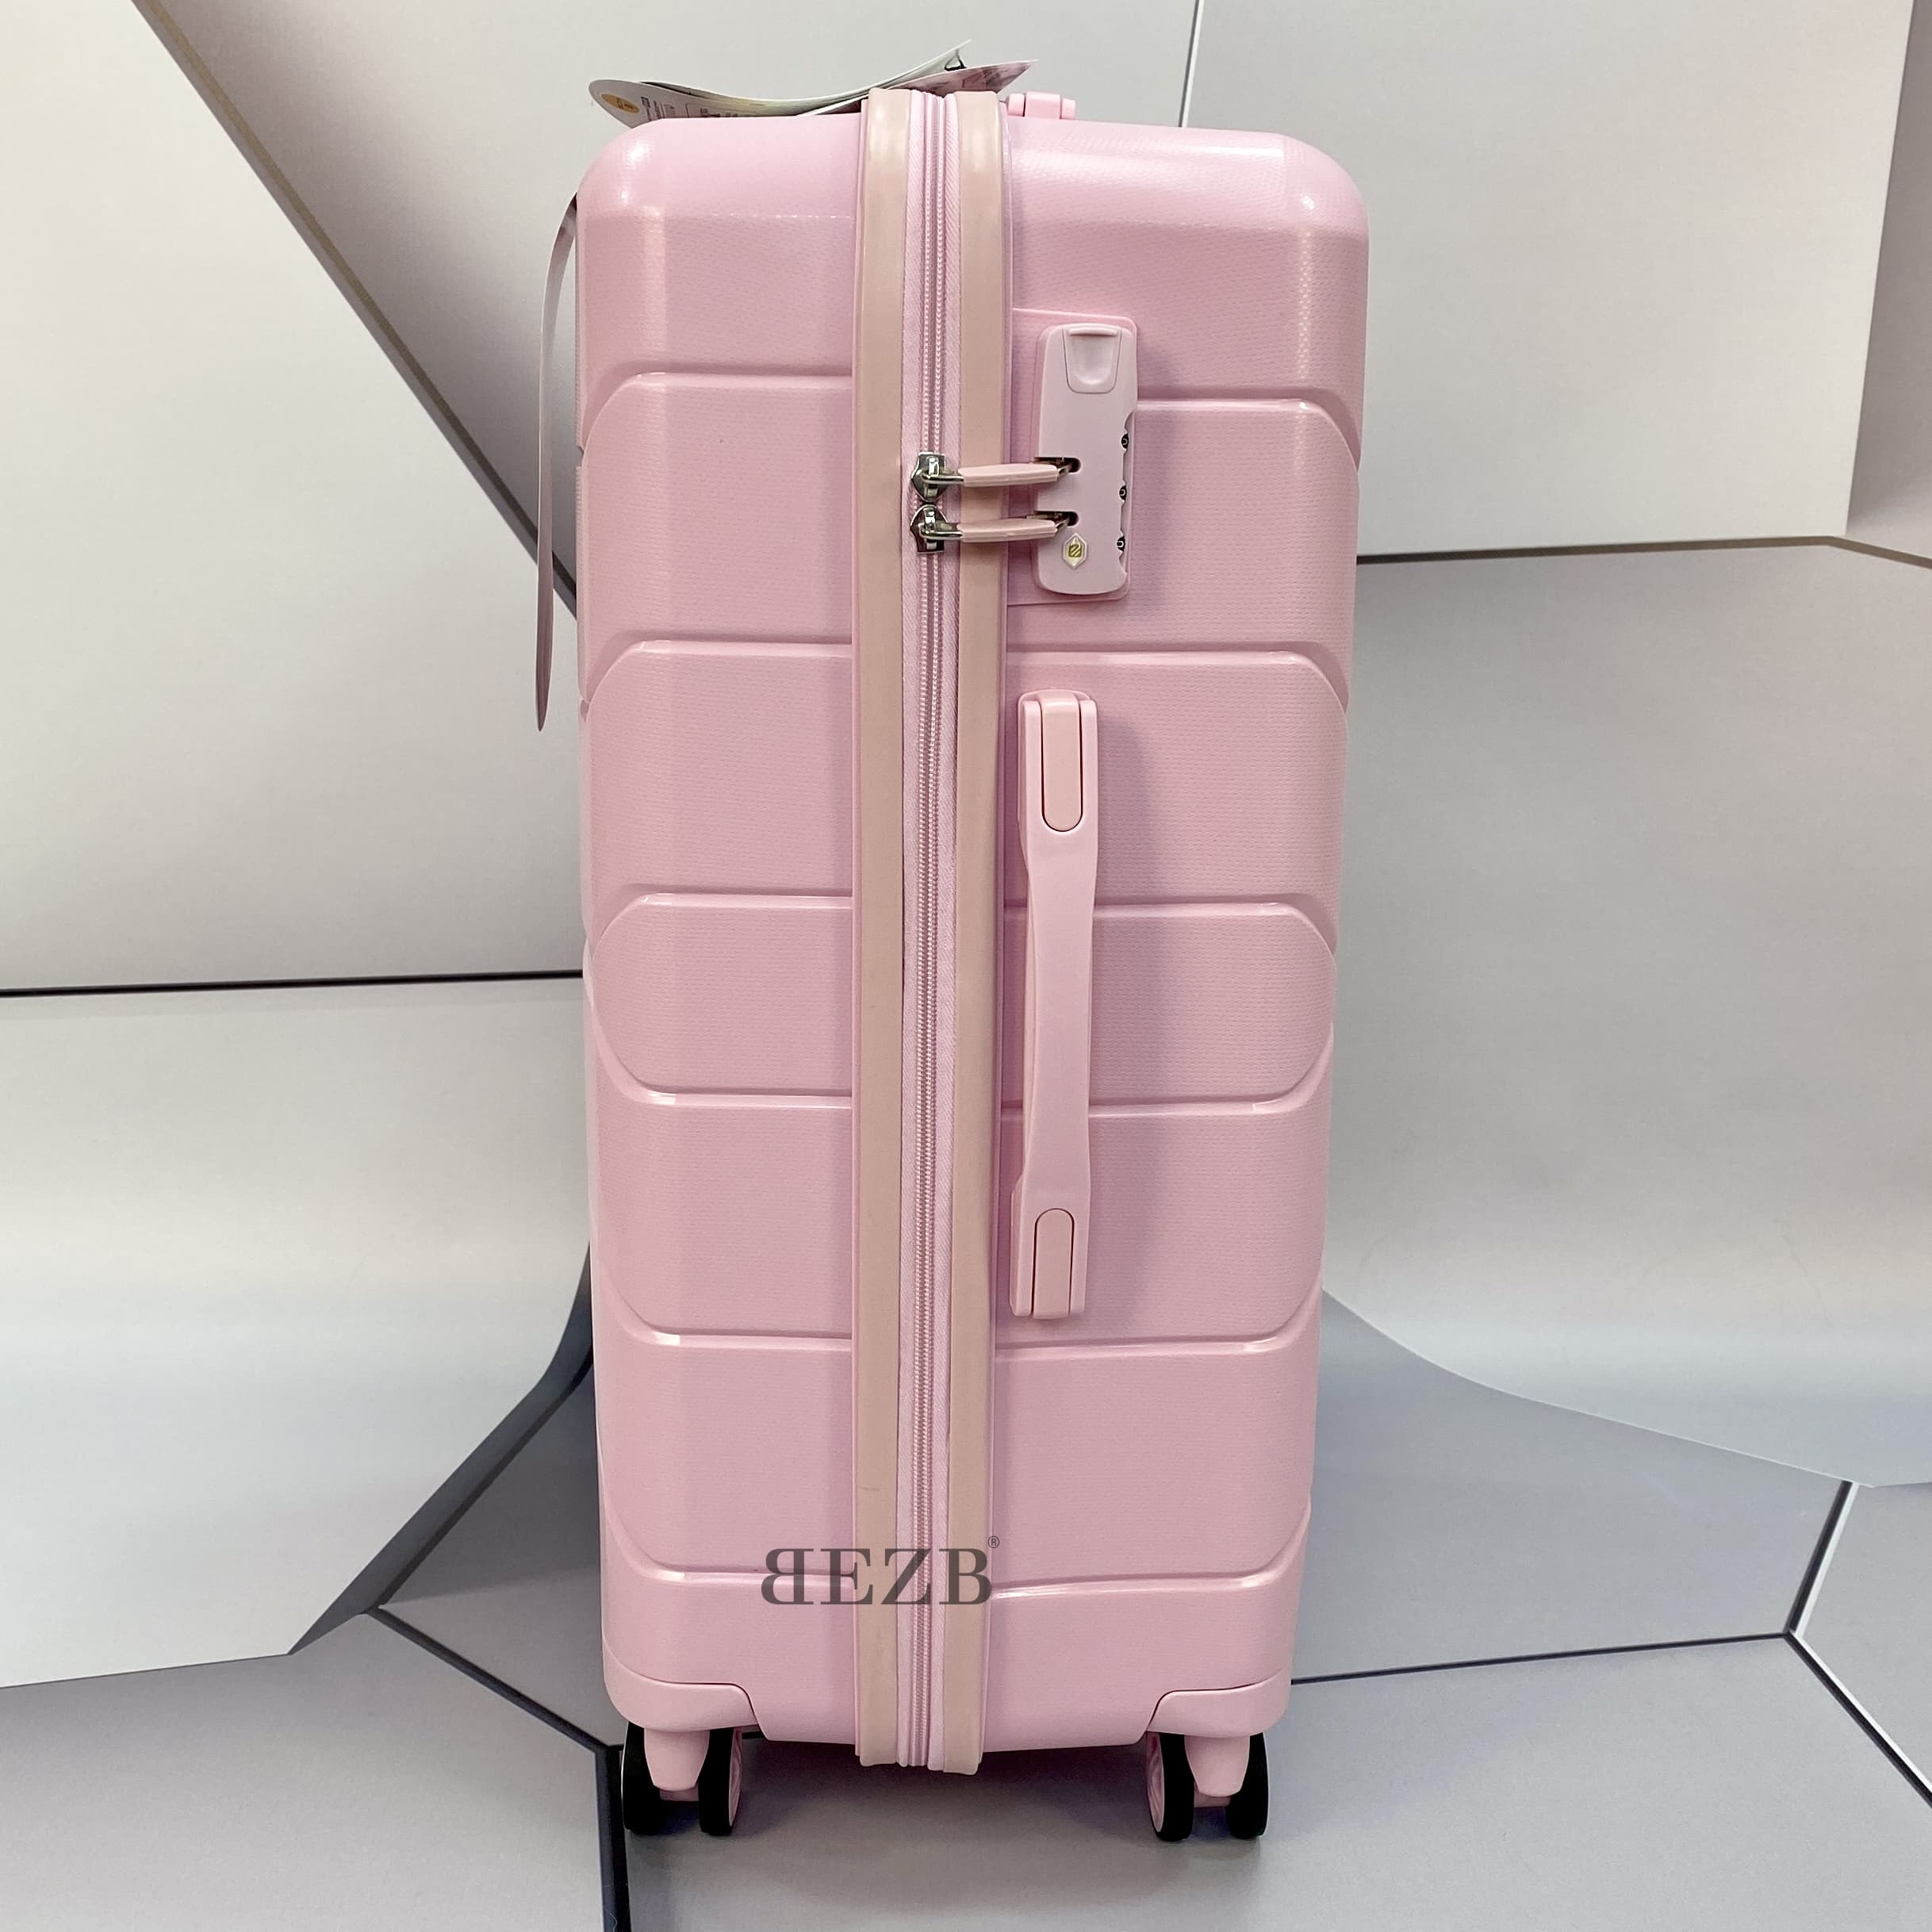 Средний чемодан из полипропилена MCS V366 M POWDER! Для 18 кг! - 5